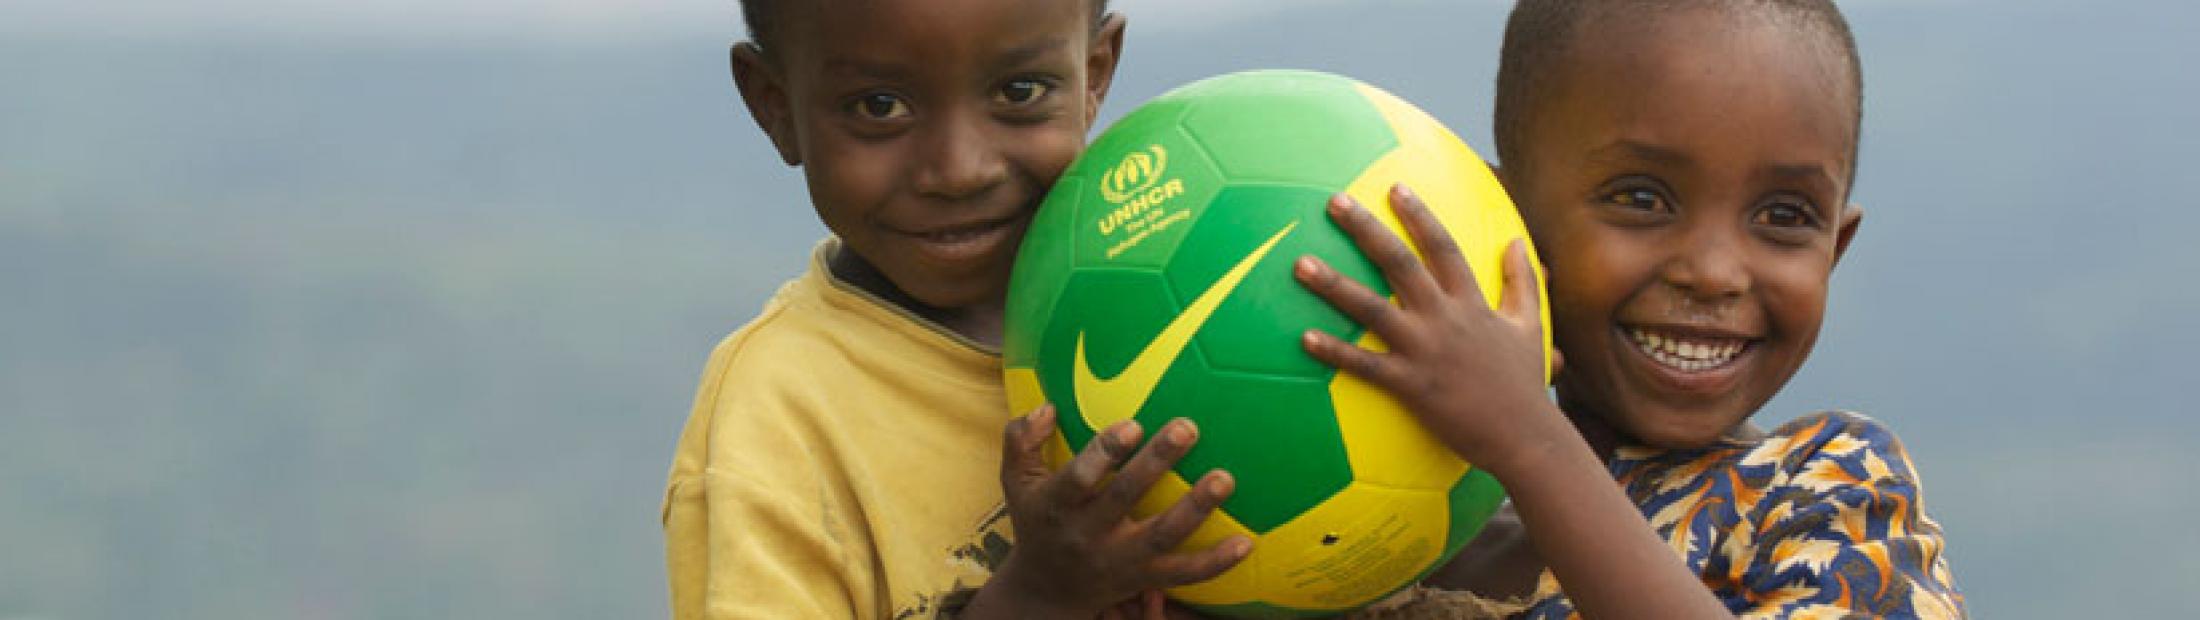 Deporte y refugiados: el camino hacia una nueva vida